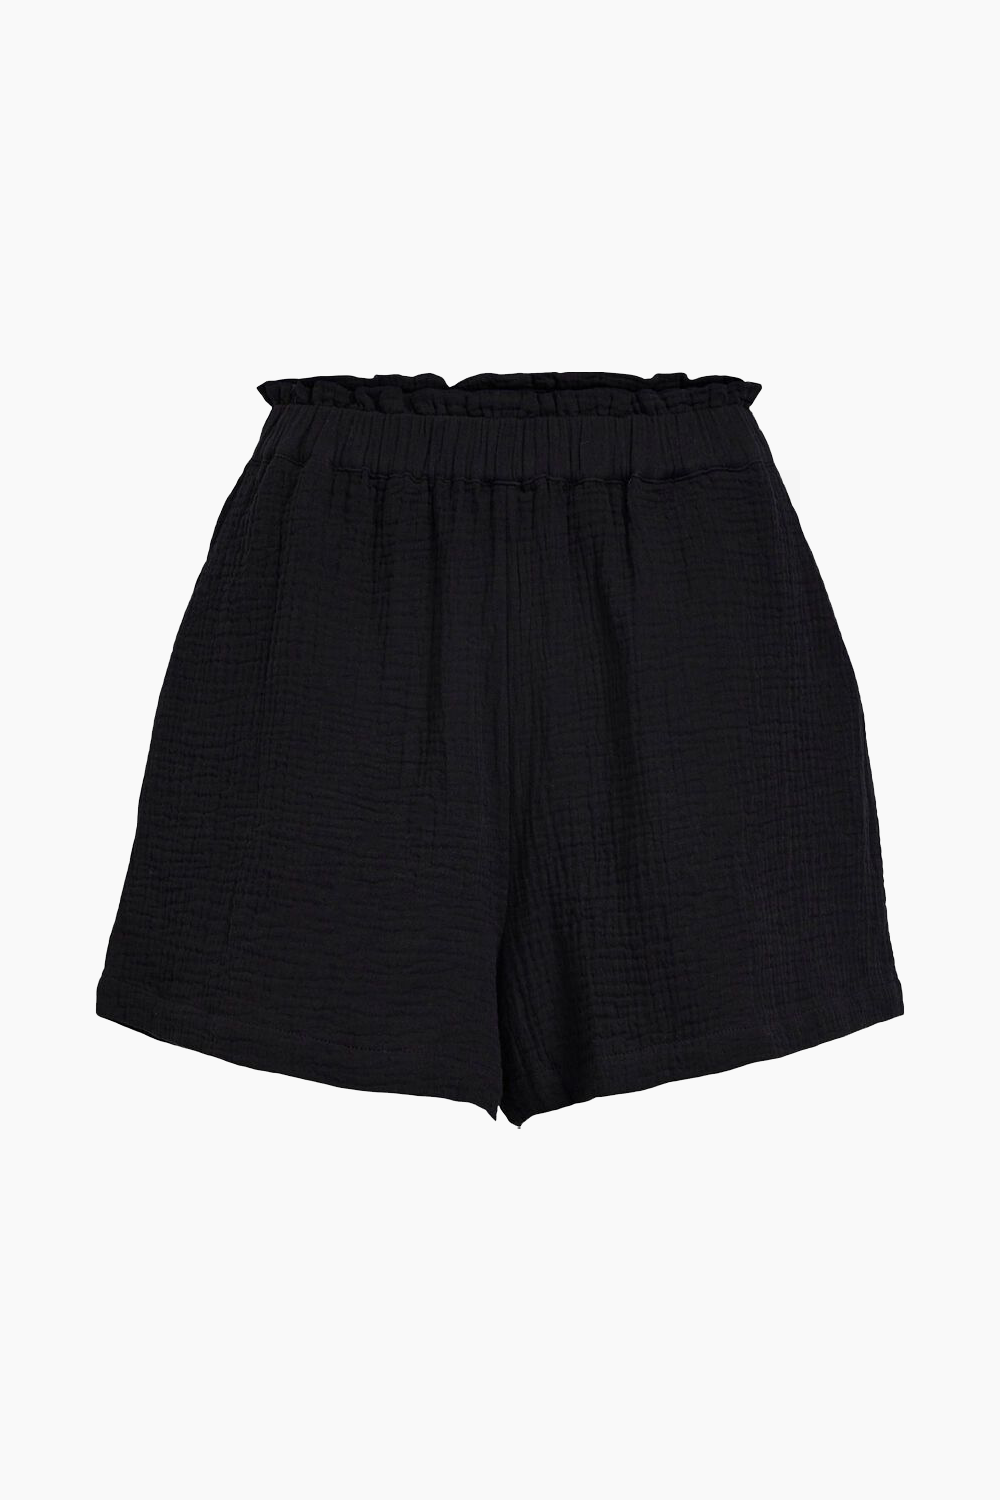 Objcarina HW Shorts - Black - Object - Sort L